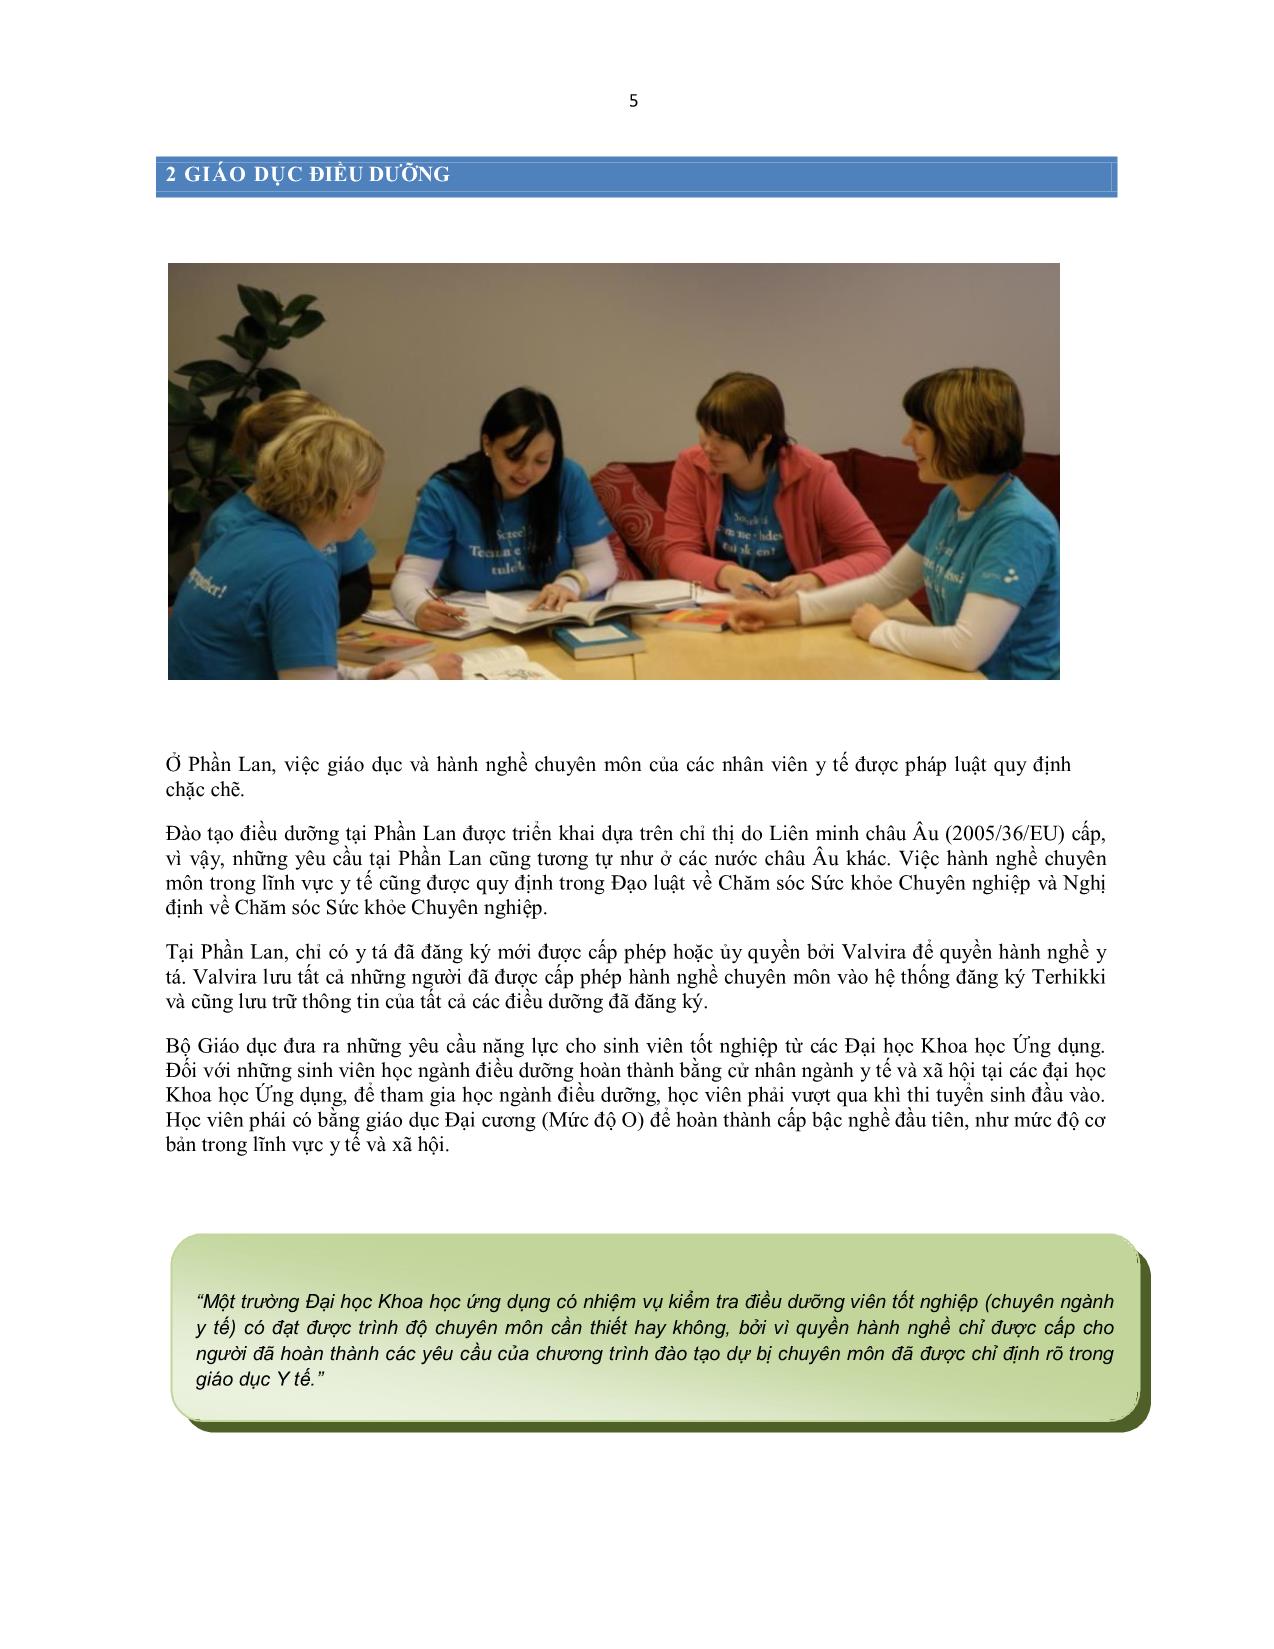 Giáo trình Hướng dẫn dành cho điều dưỡng viên nước ngoài về công việc và cuộc sống tại Phần Lan trang 5